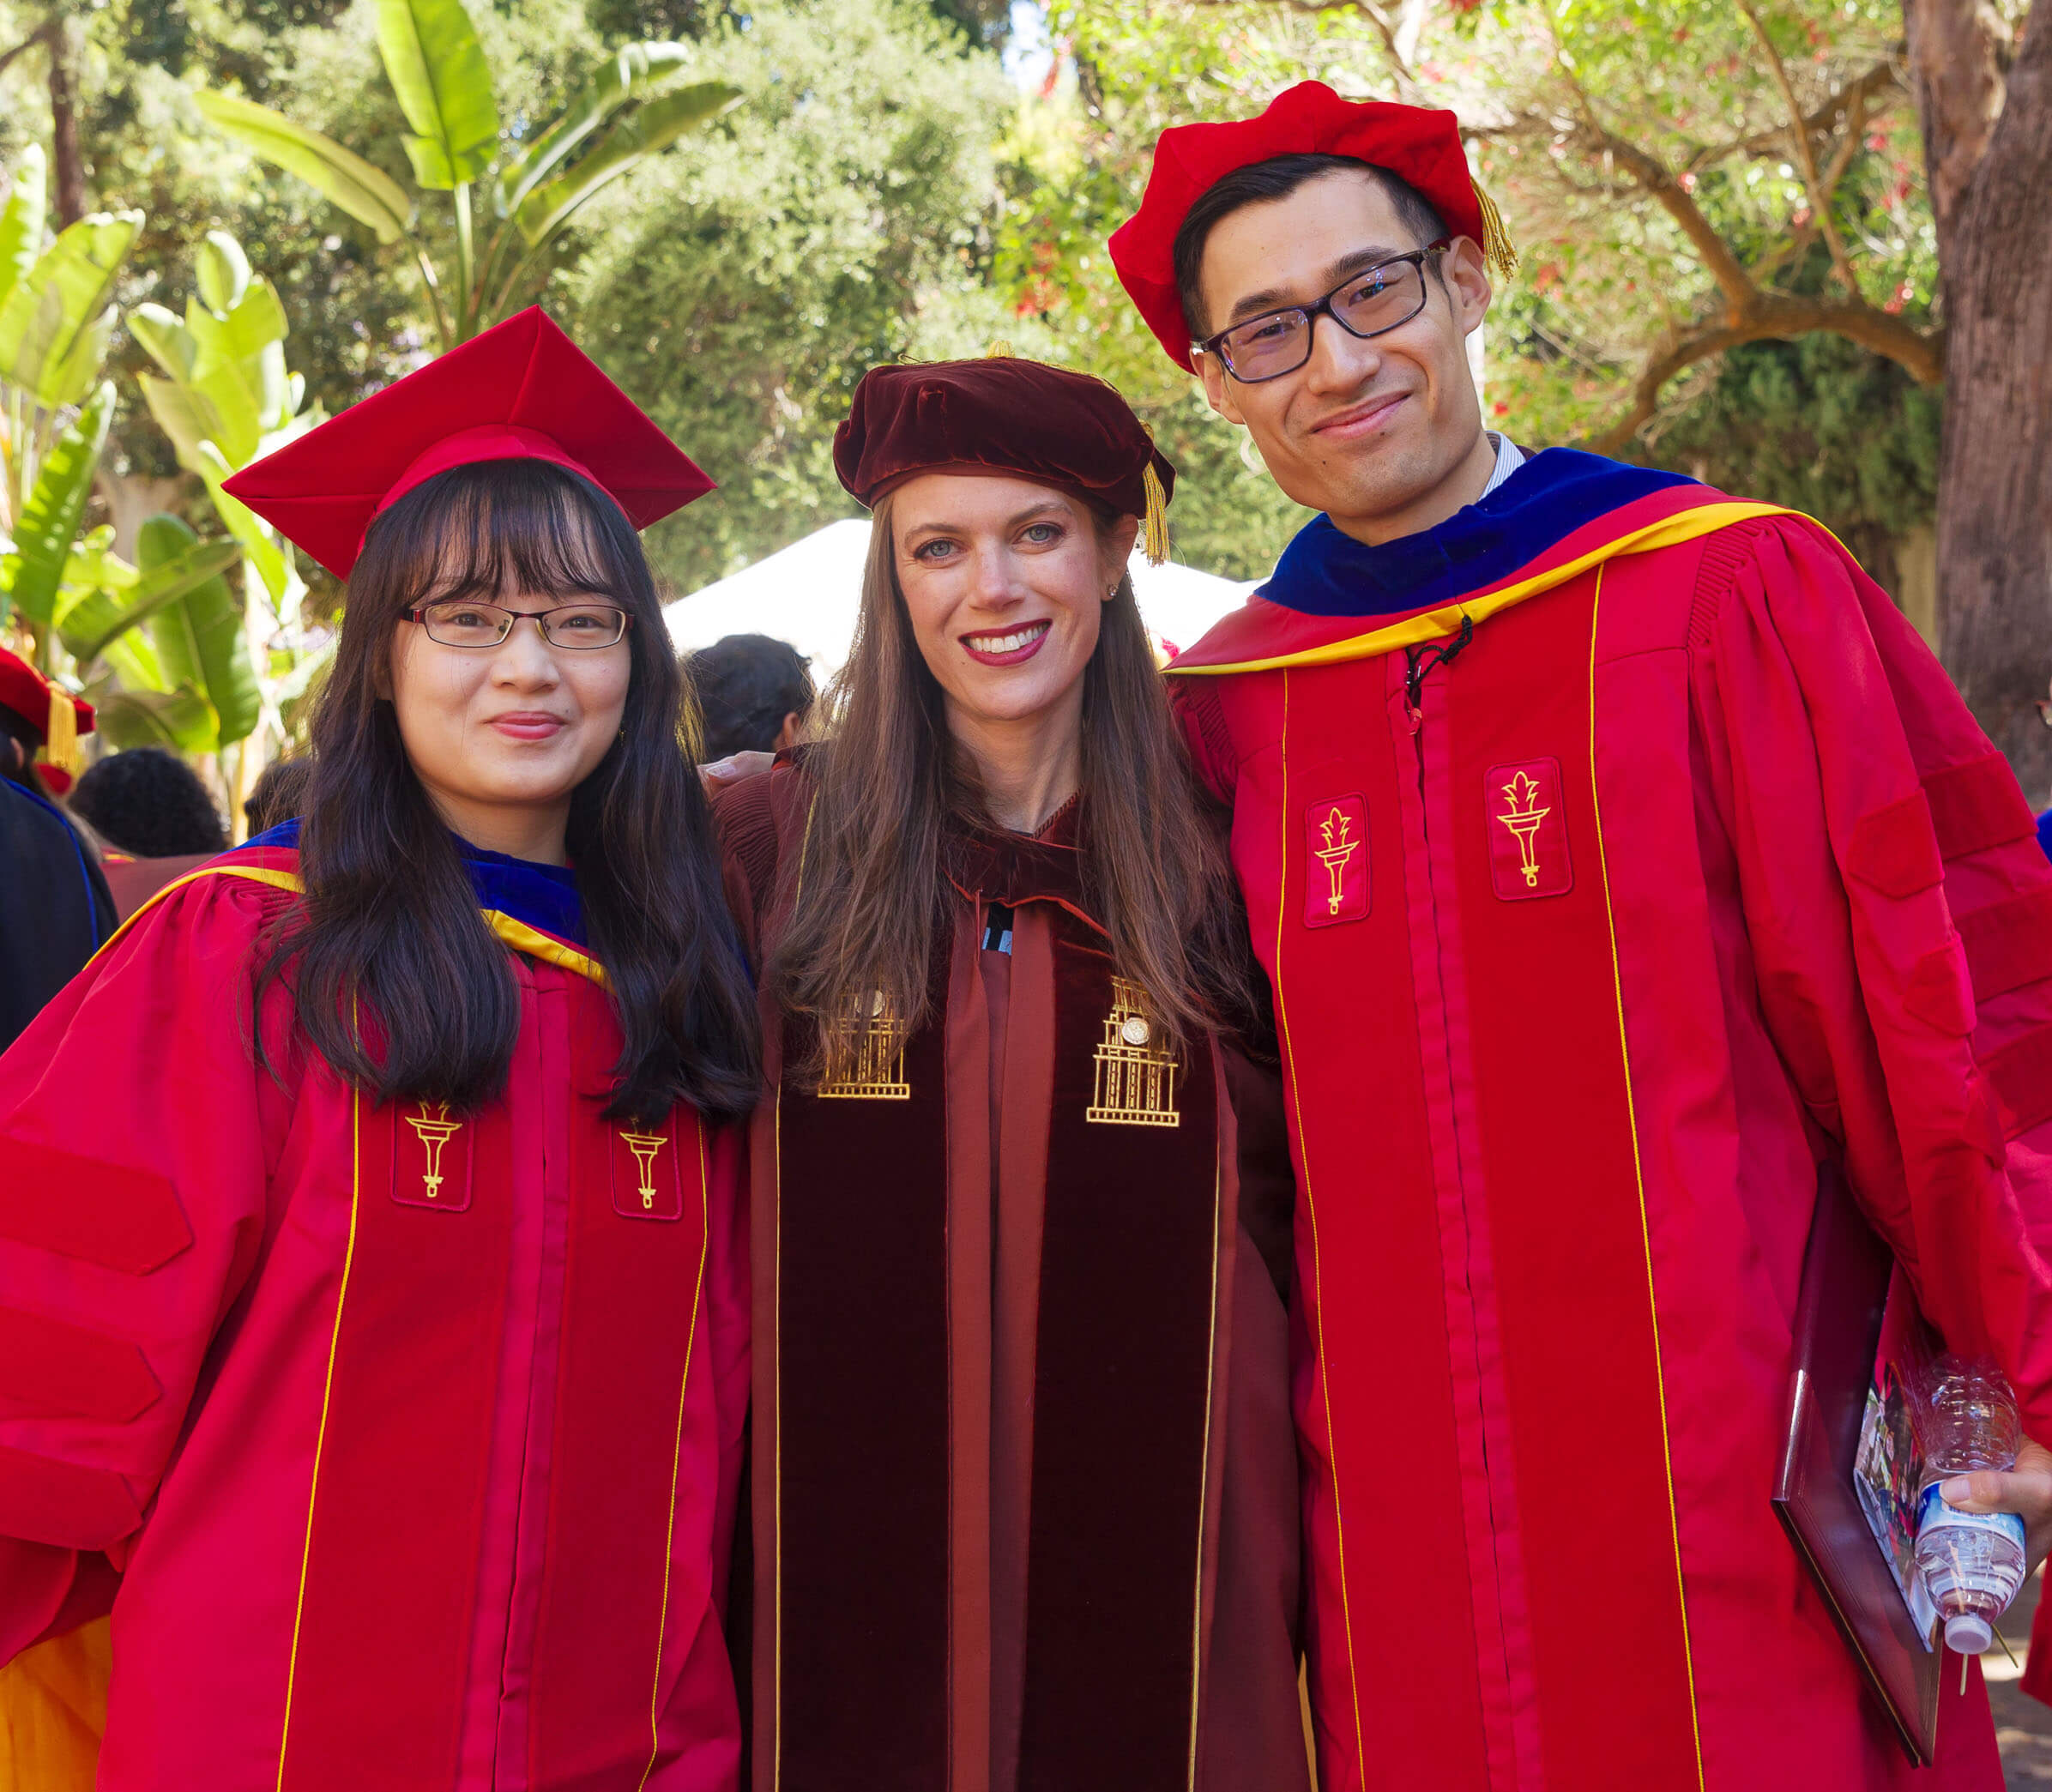 凯利·桑德斯教授(Kelly Sanders)在南加州大学联合公园(USC’s Associates Park)举行的就职典礼和颁奖招待会上，身旁站着刚戴上兜帽的博士李云(Yun Li)和陈默(Mo Chen)。